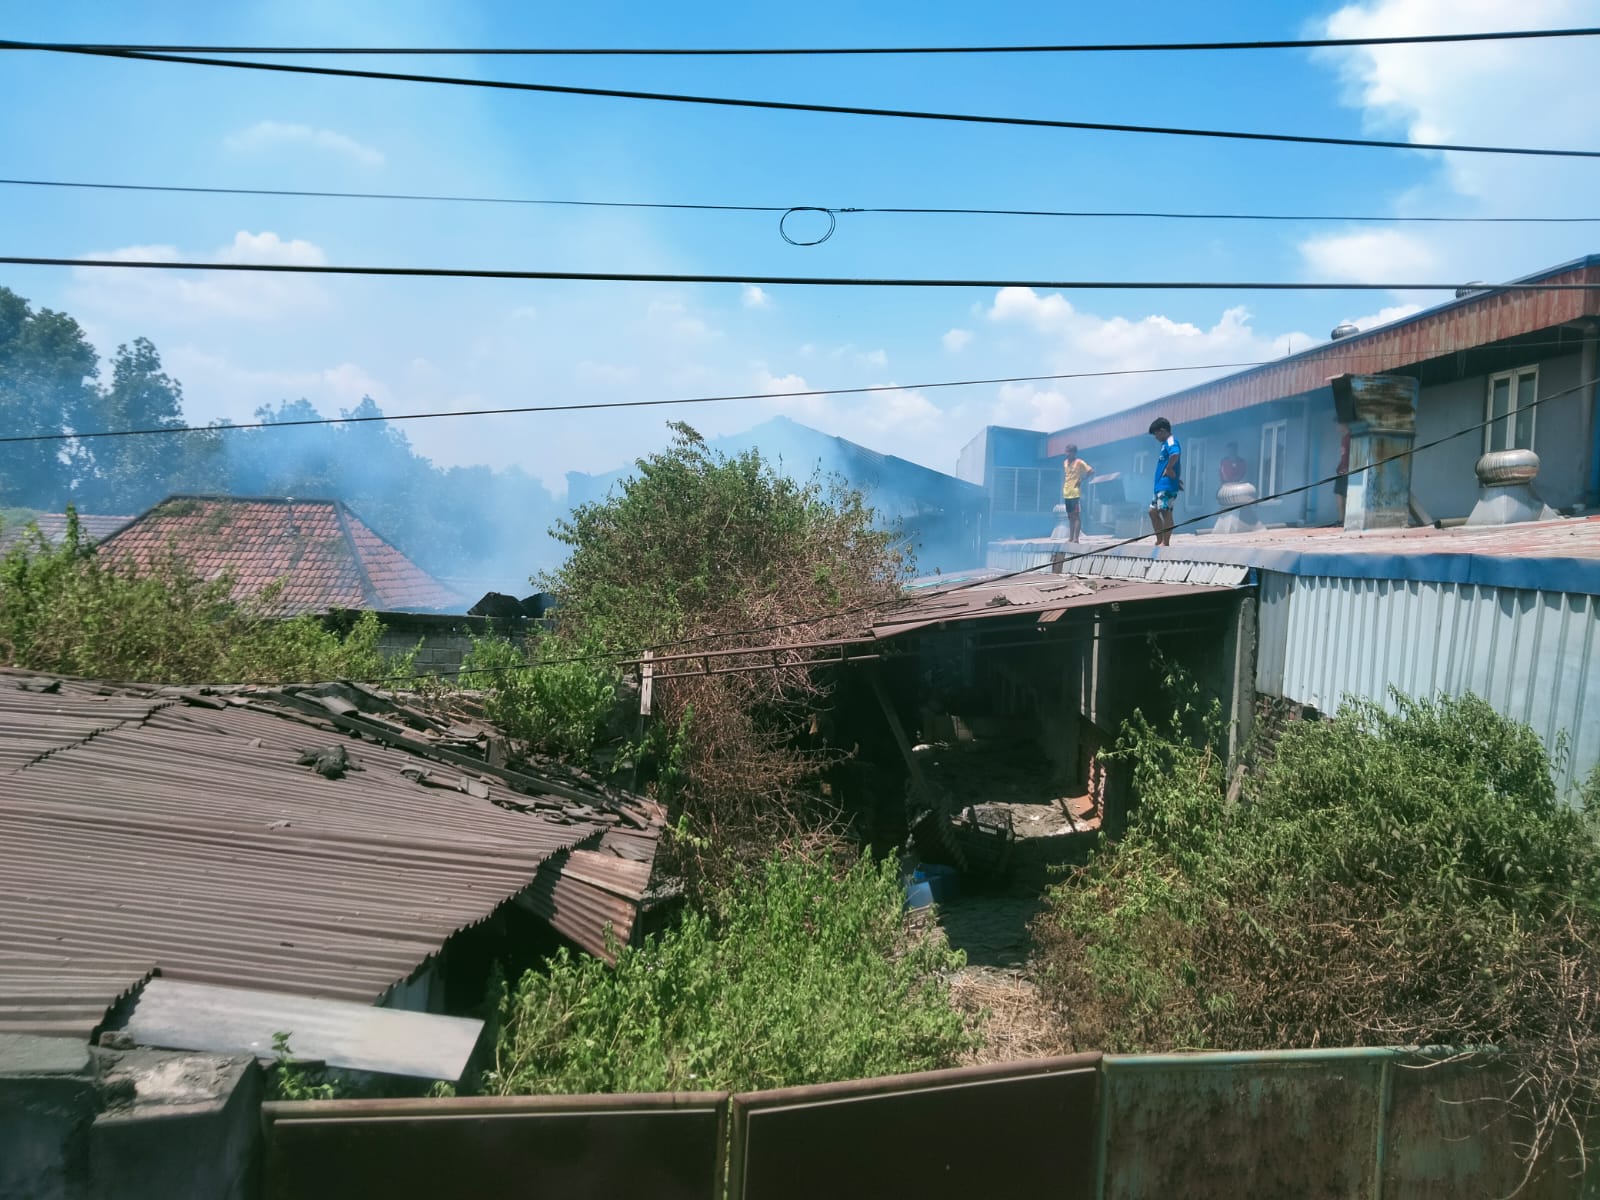 Kebakaran Rongsokan (Lahan Bekas Pabrik) di Desa Wonokupang, Kecamatan Balongbendo